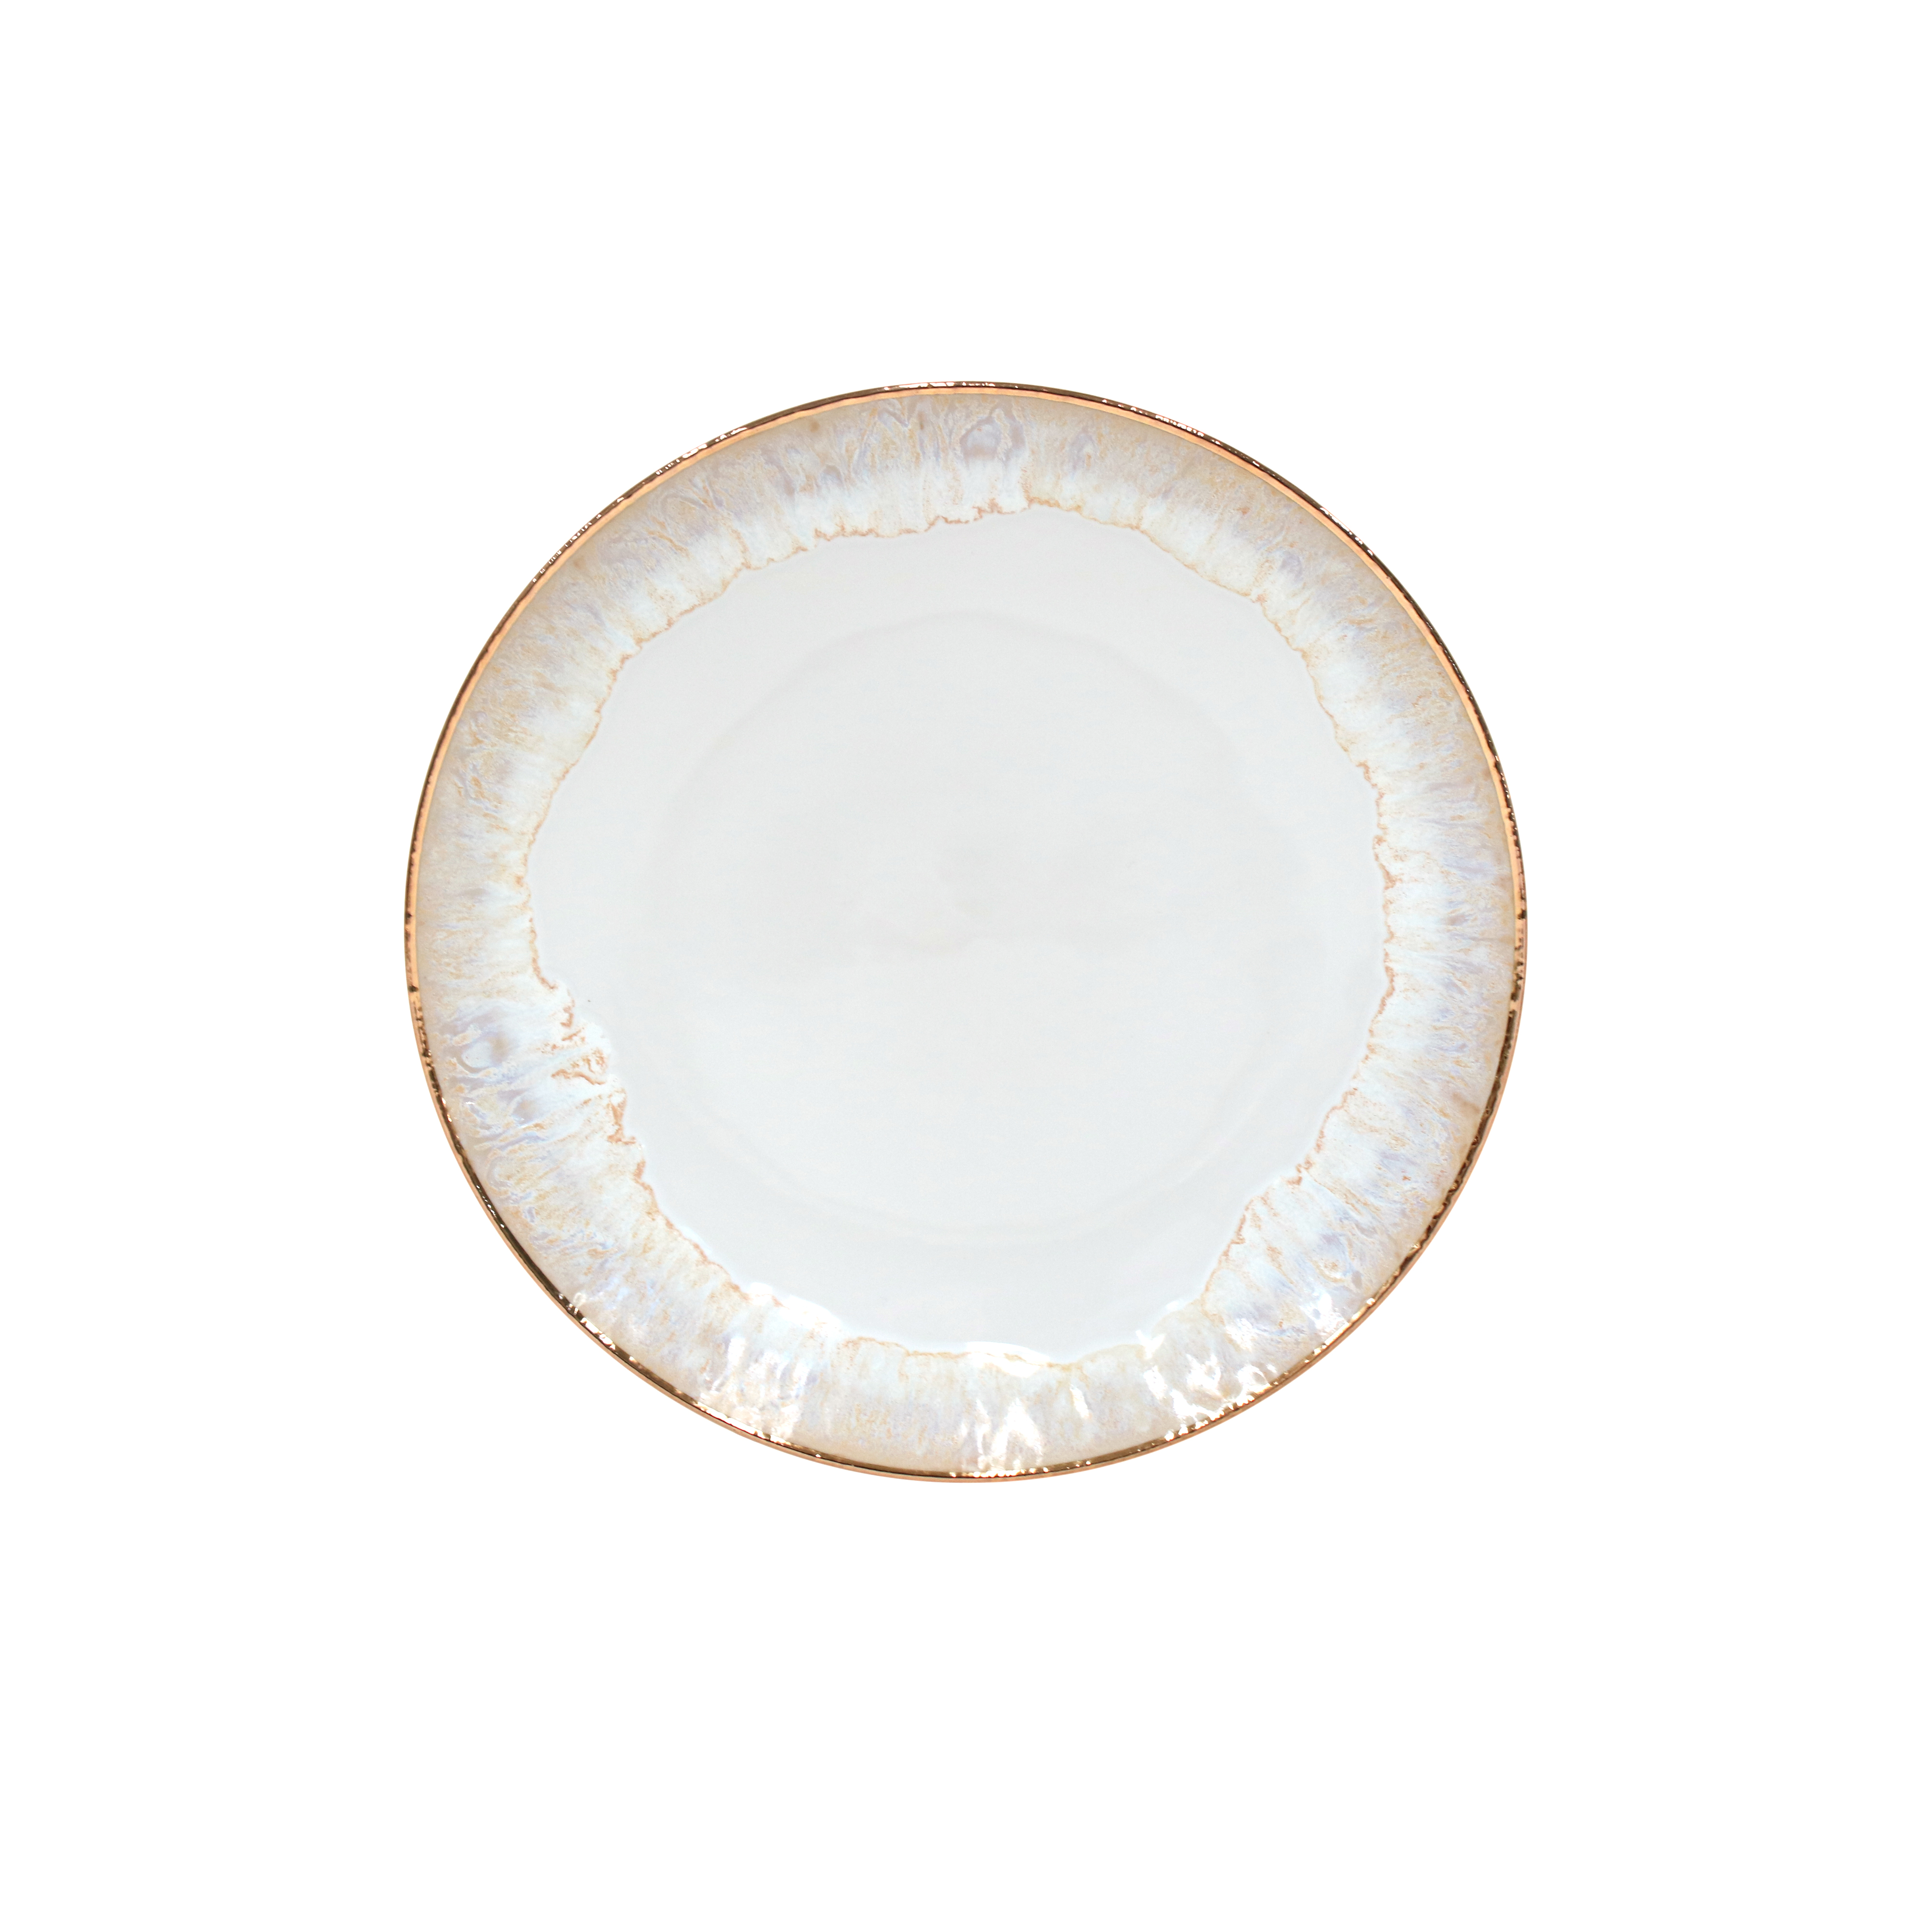 Taormina White-gold Dinner Plate 27cm Gift